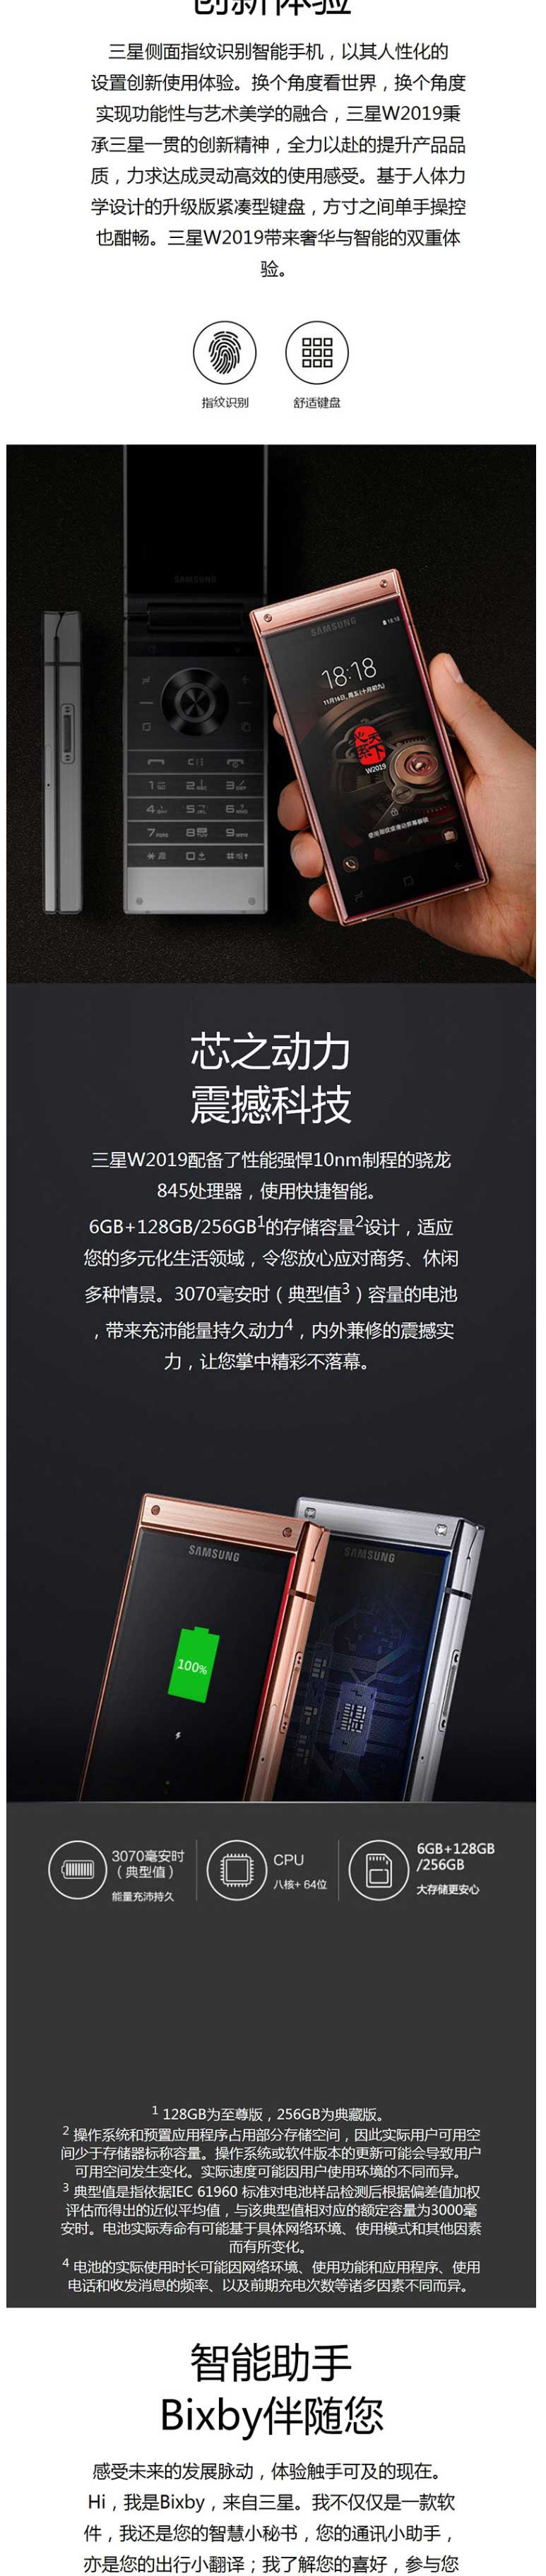 三星/SAMSUNG W2019(SM-W2019)翻盖智能商务手机 6GB+128GB 睿金色